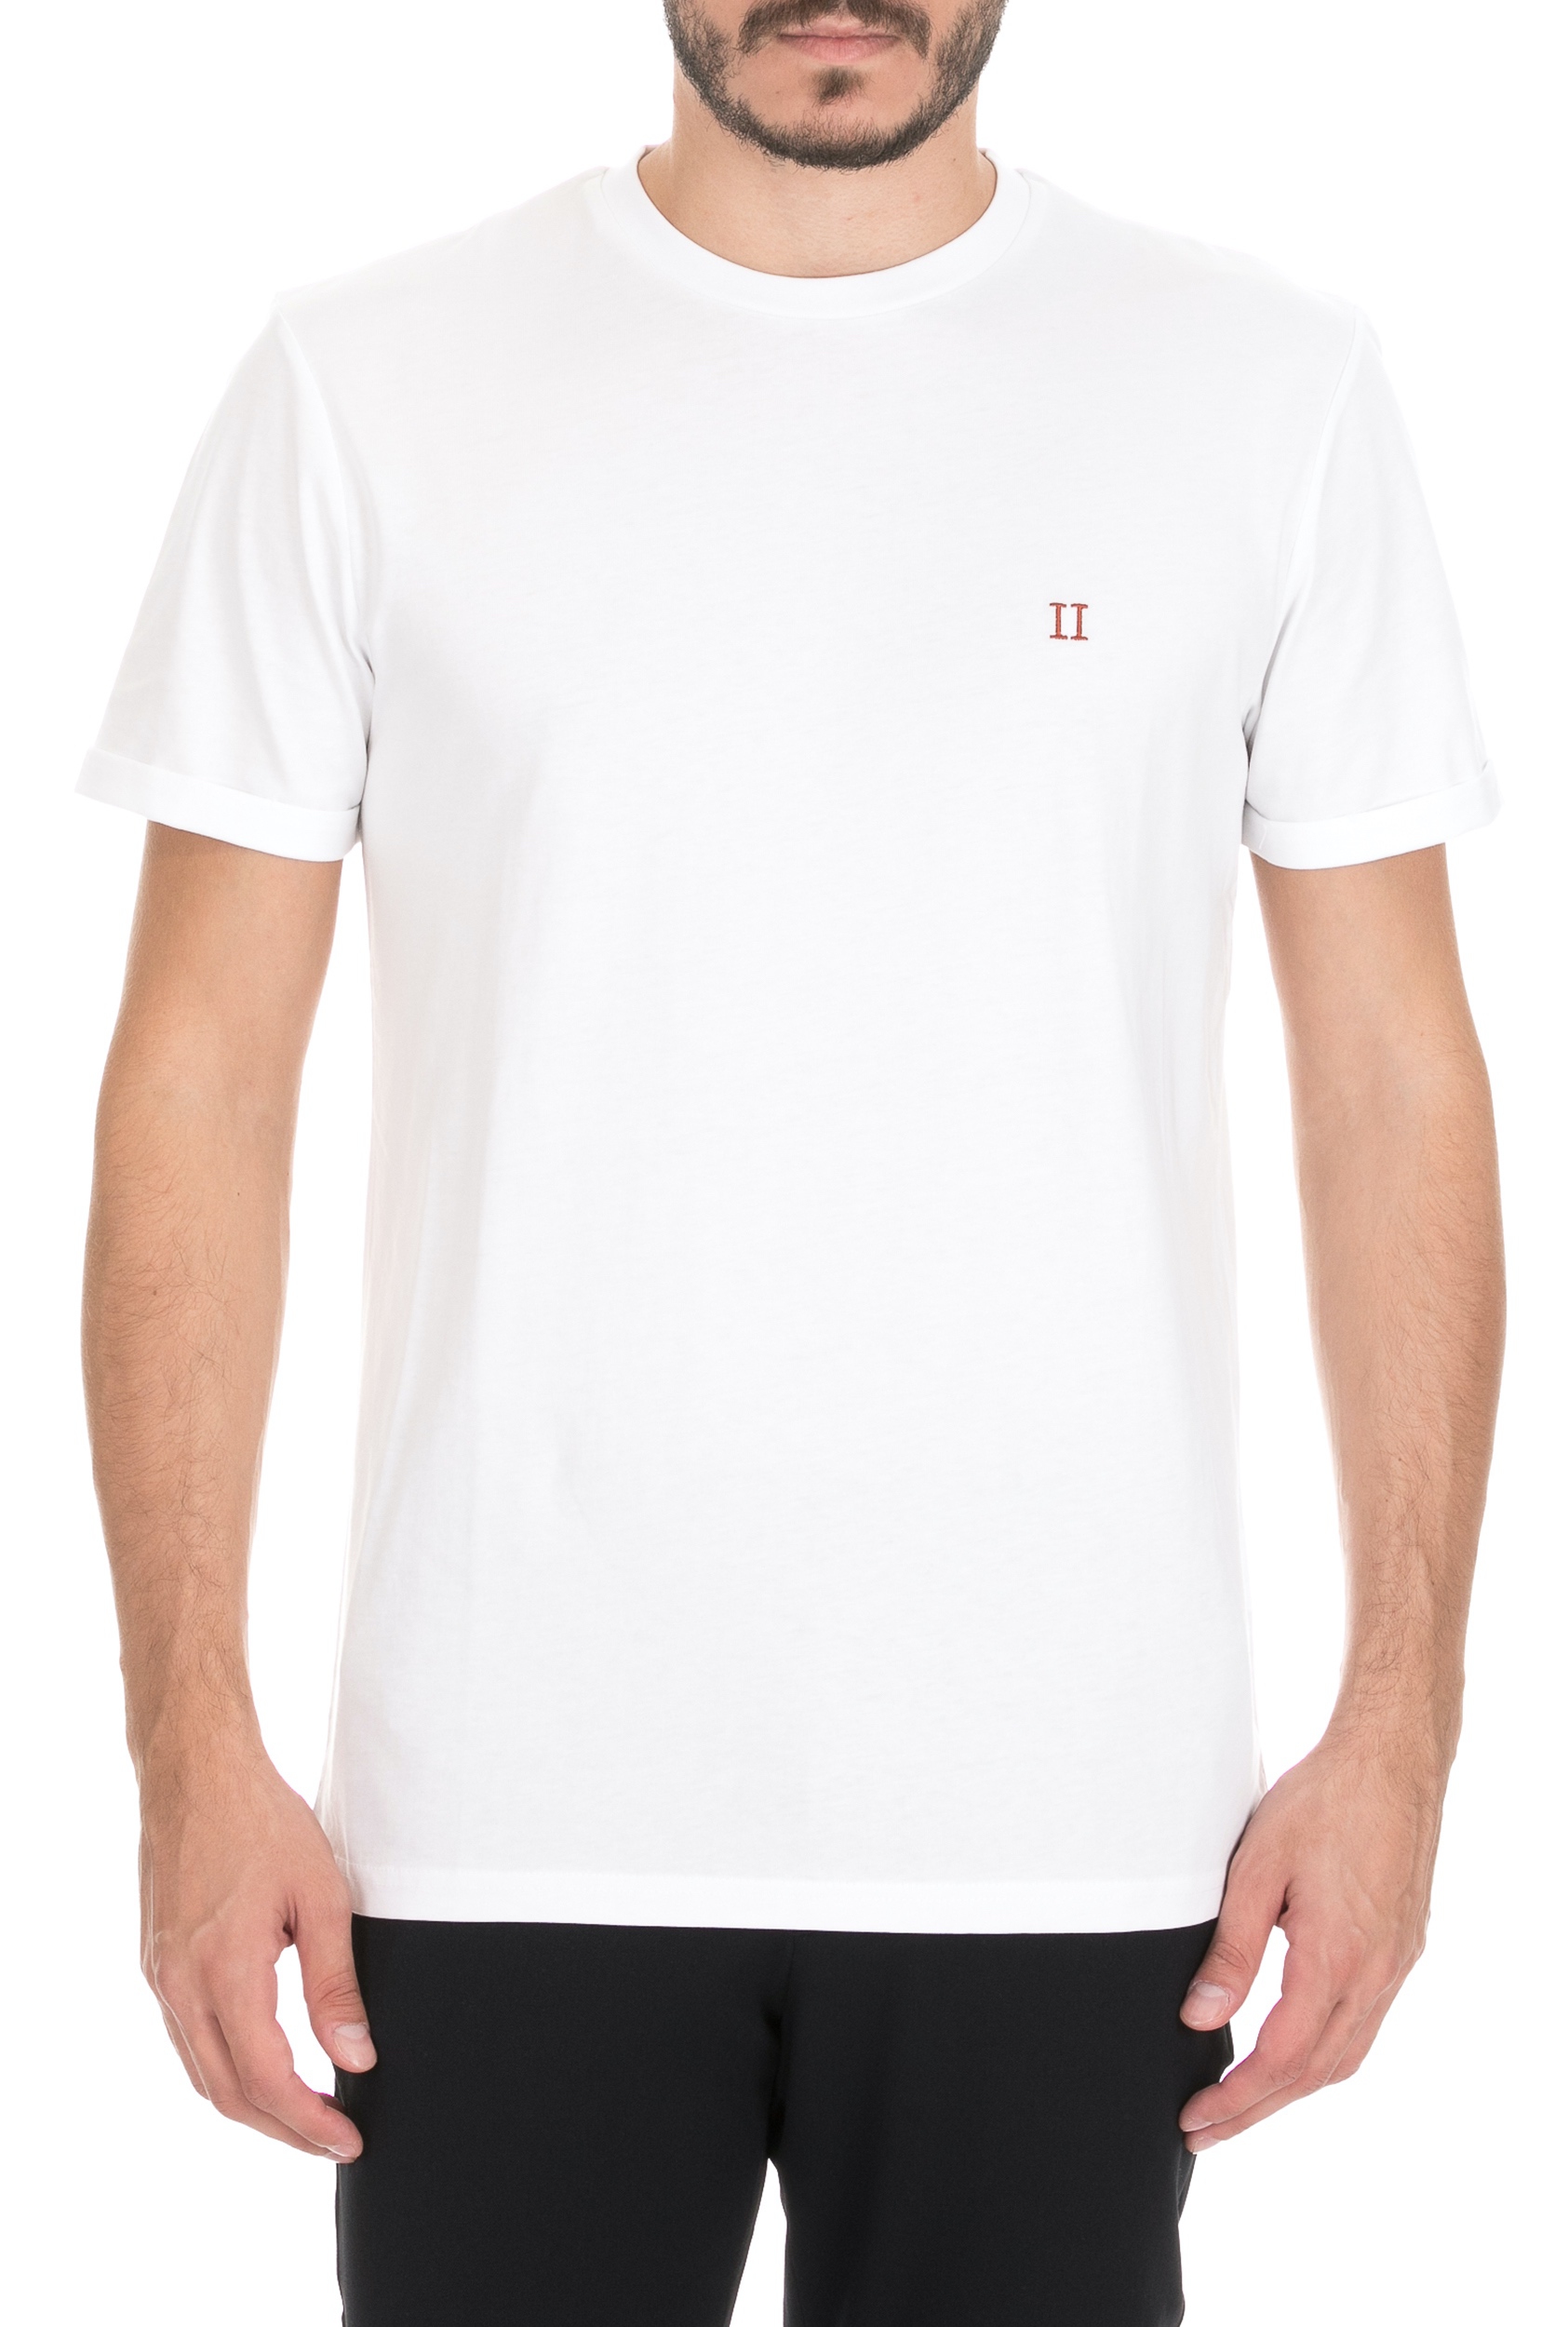 Ανδρικά/Ρούχα/Μπλούζες/Κοντομάνικες LES DEUX - Ανδρική κοντομάνικη μπλούζα LES DEUX λευκή